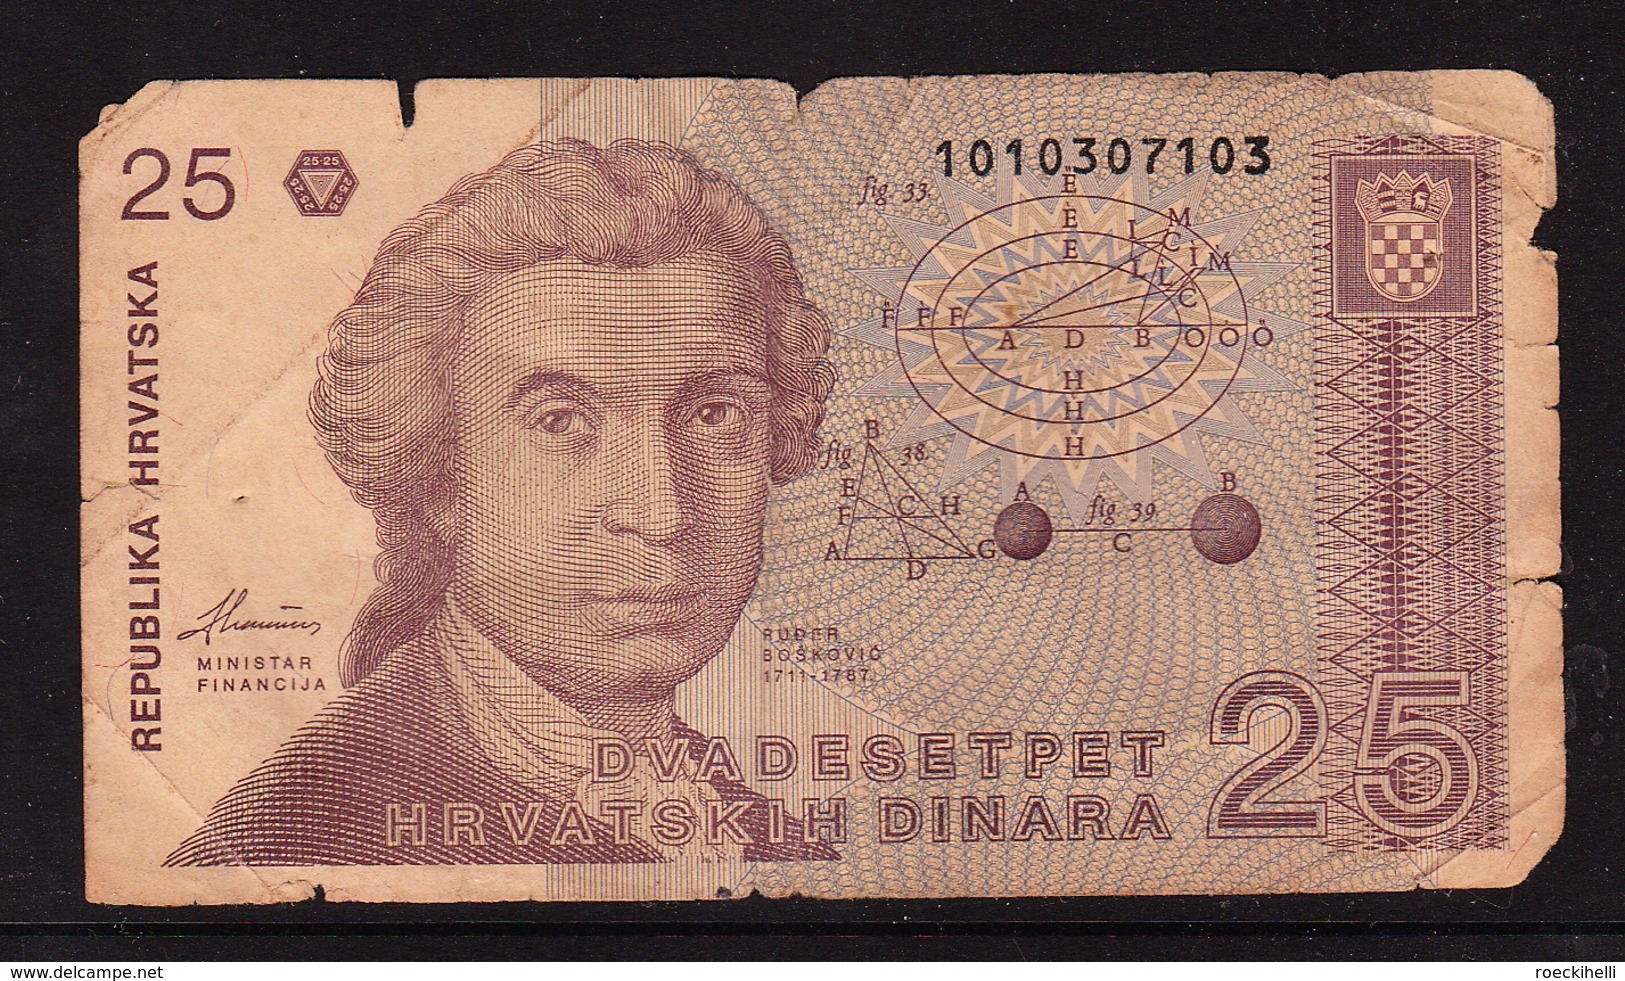 1991 -  KROATIEN  - Zagreb -  25 Kroatische Dinar  -  Siehe Scan  (Bn Cro 01) - Croatie